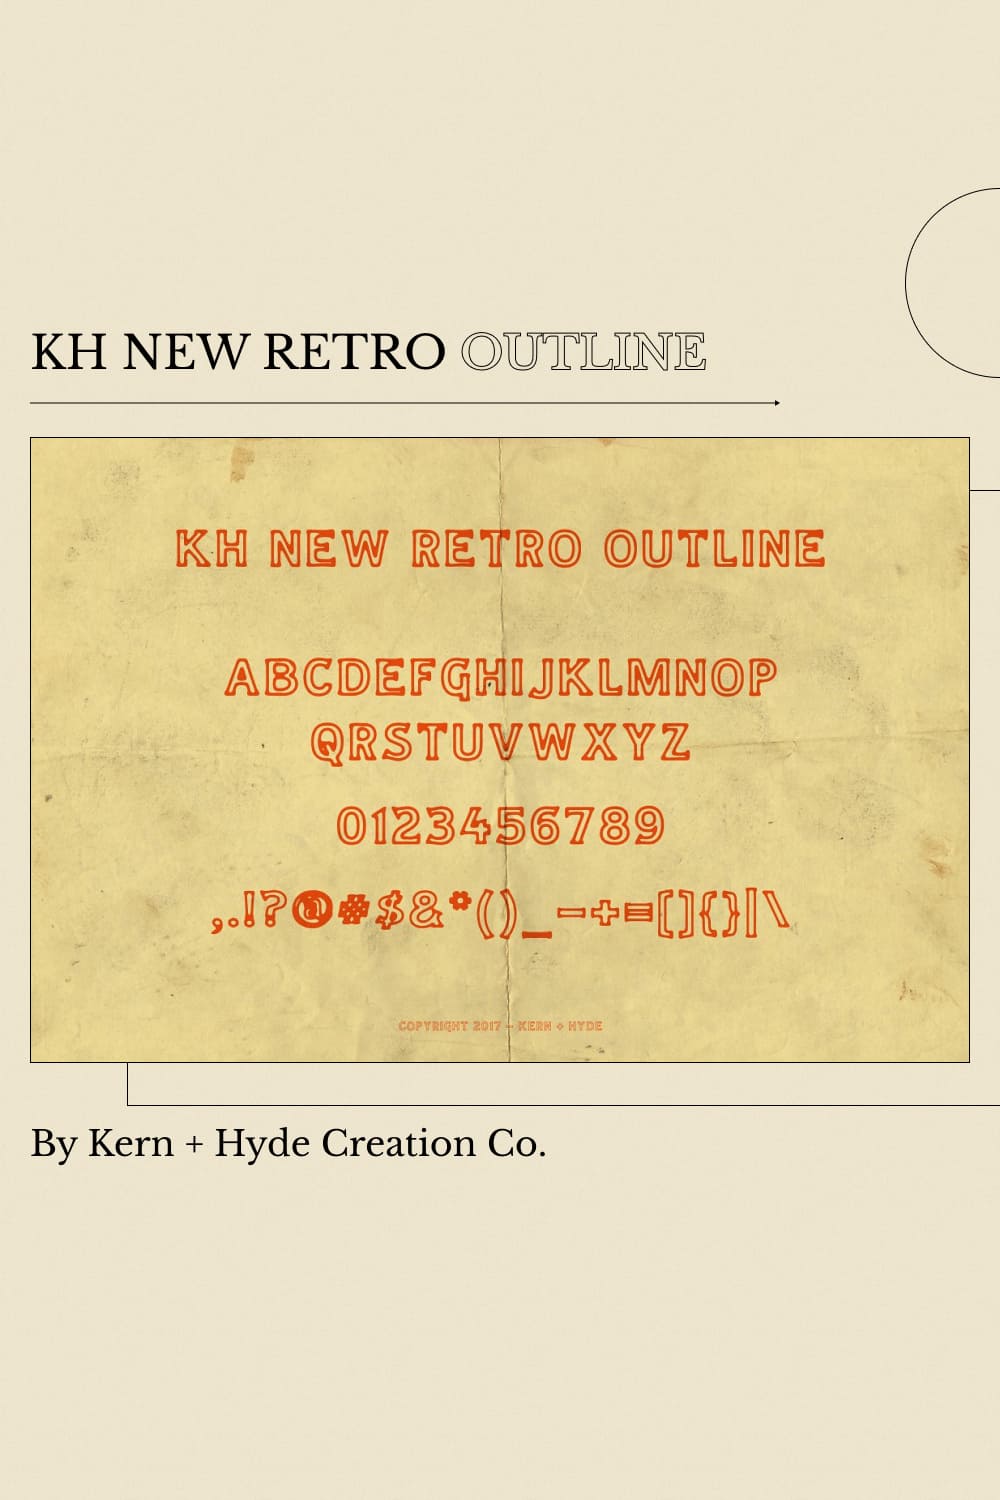 KH New Retro Outline - Pinterest Preview.